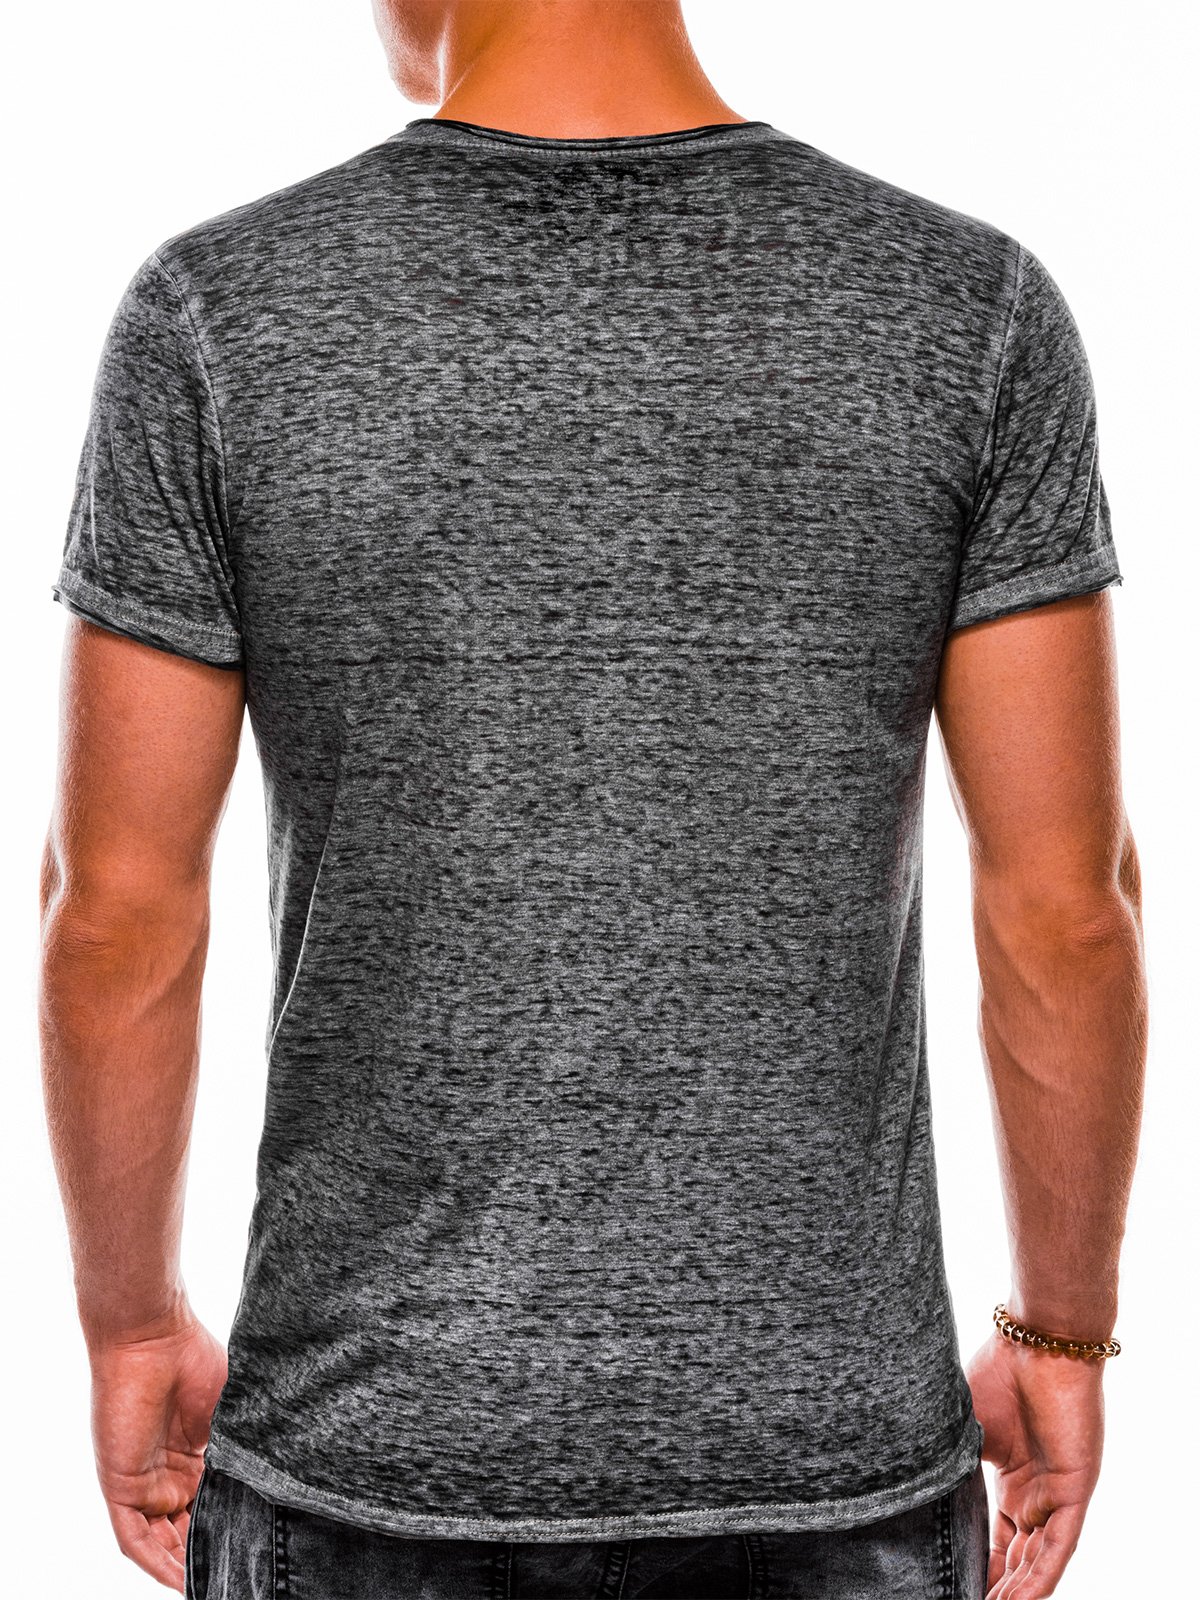 Men's plain t-shirt S1051 - grey | MODONE wholesale - Clothing For Men